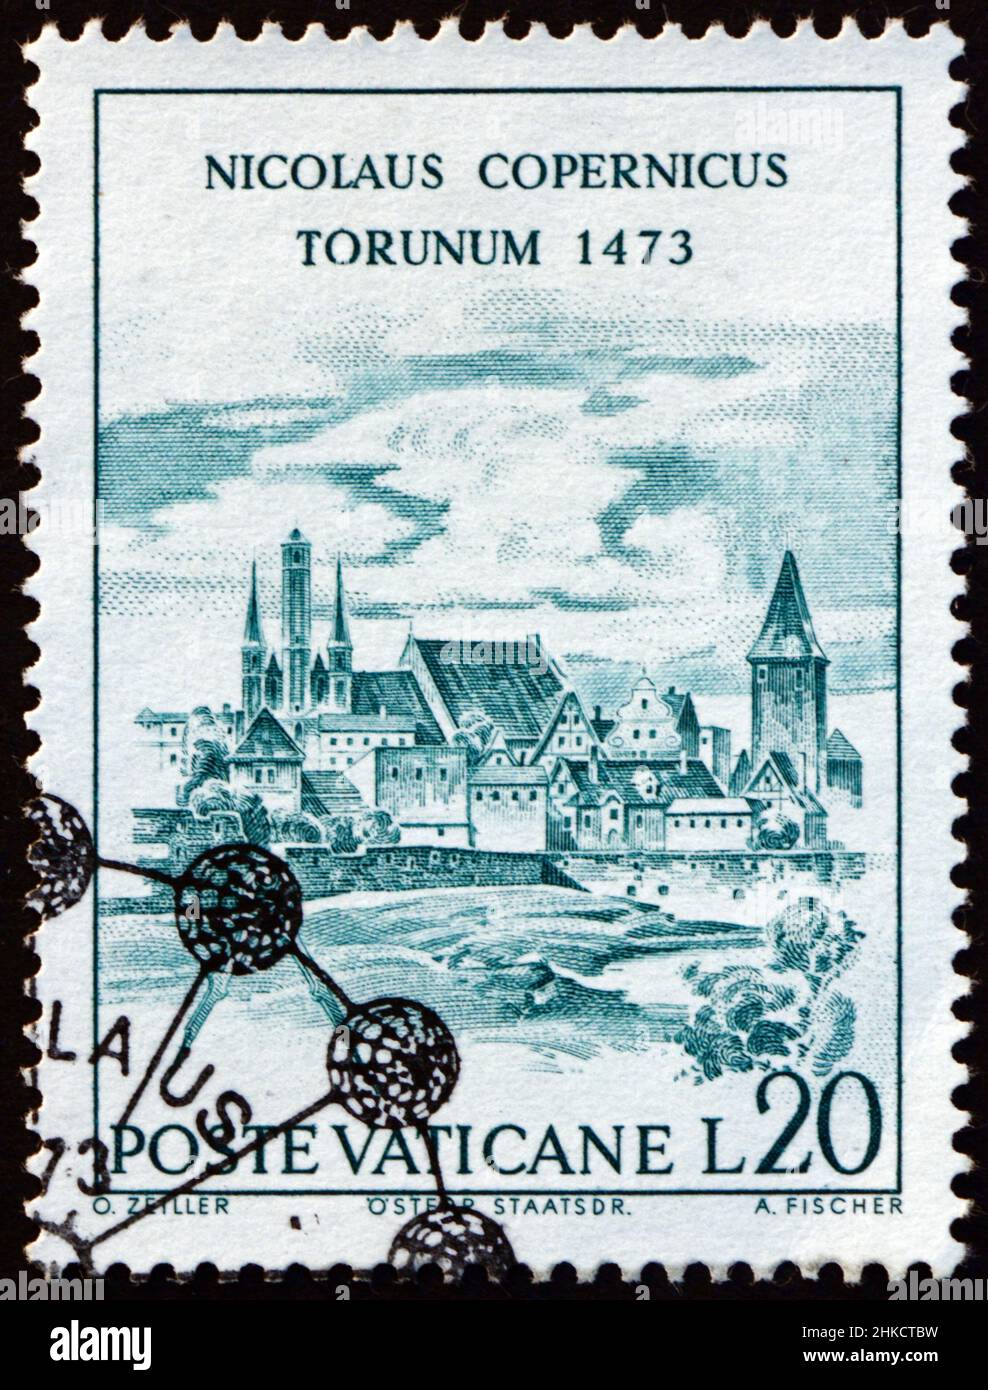 VATIKAN - UM 1973: Eine im Vatikan gedruckte Briefmarke zeigt Ansicht von Torun, Nicolaus Copernicus, polnischer Astronom, um 1973 Stockfoto